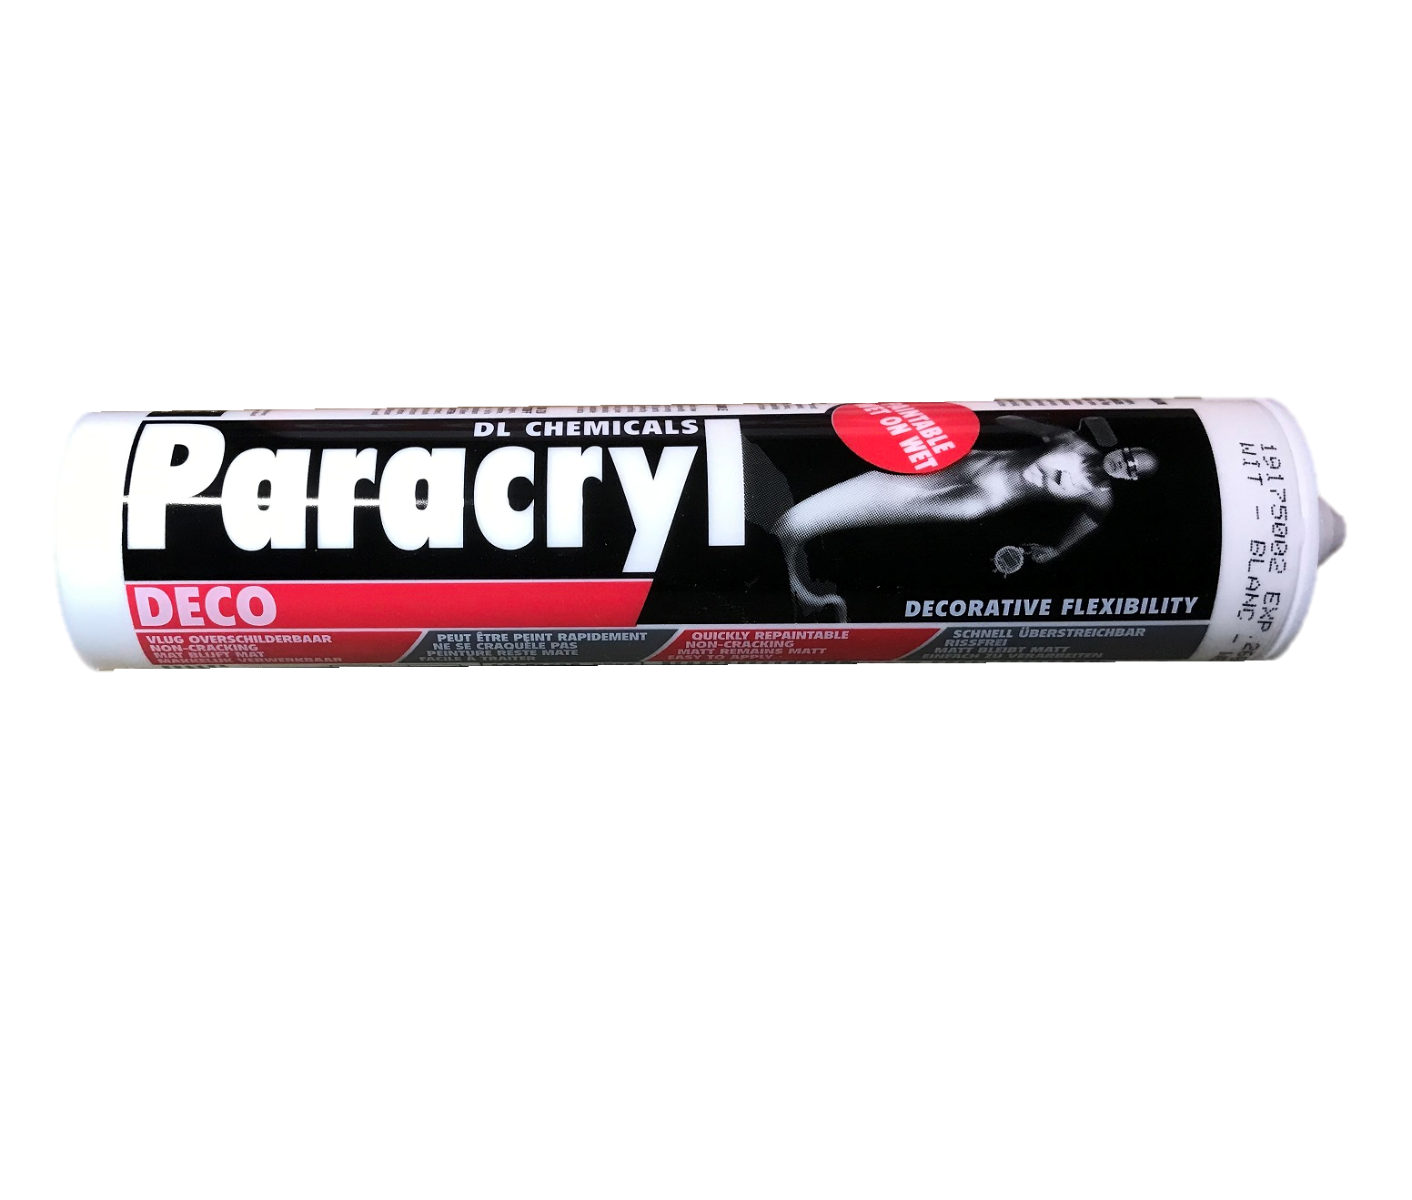 Paracryl Deco wit 310ML-5413624104019